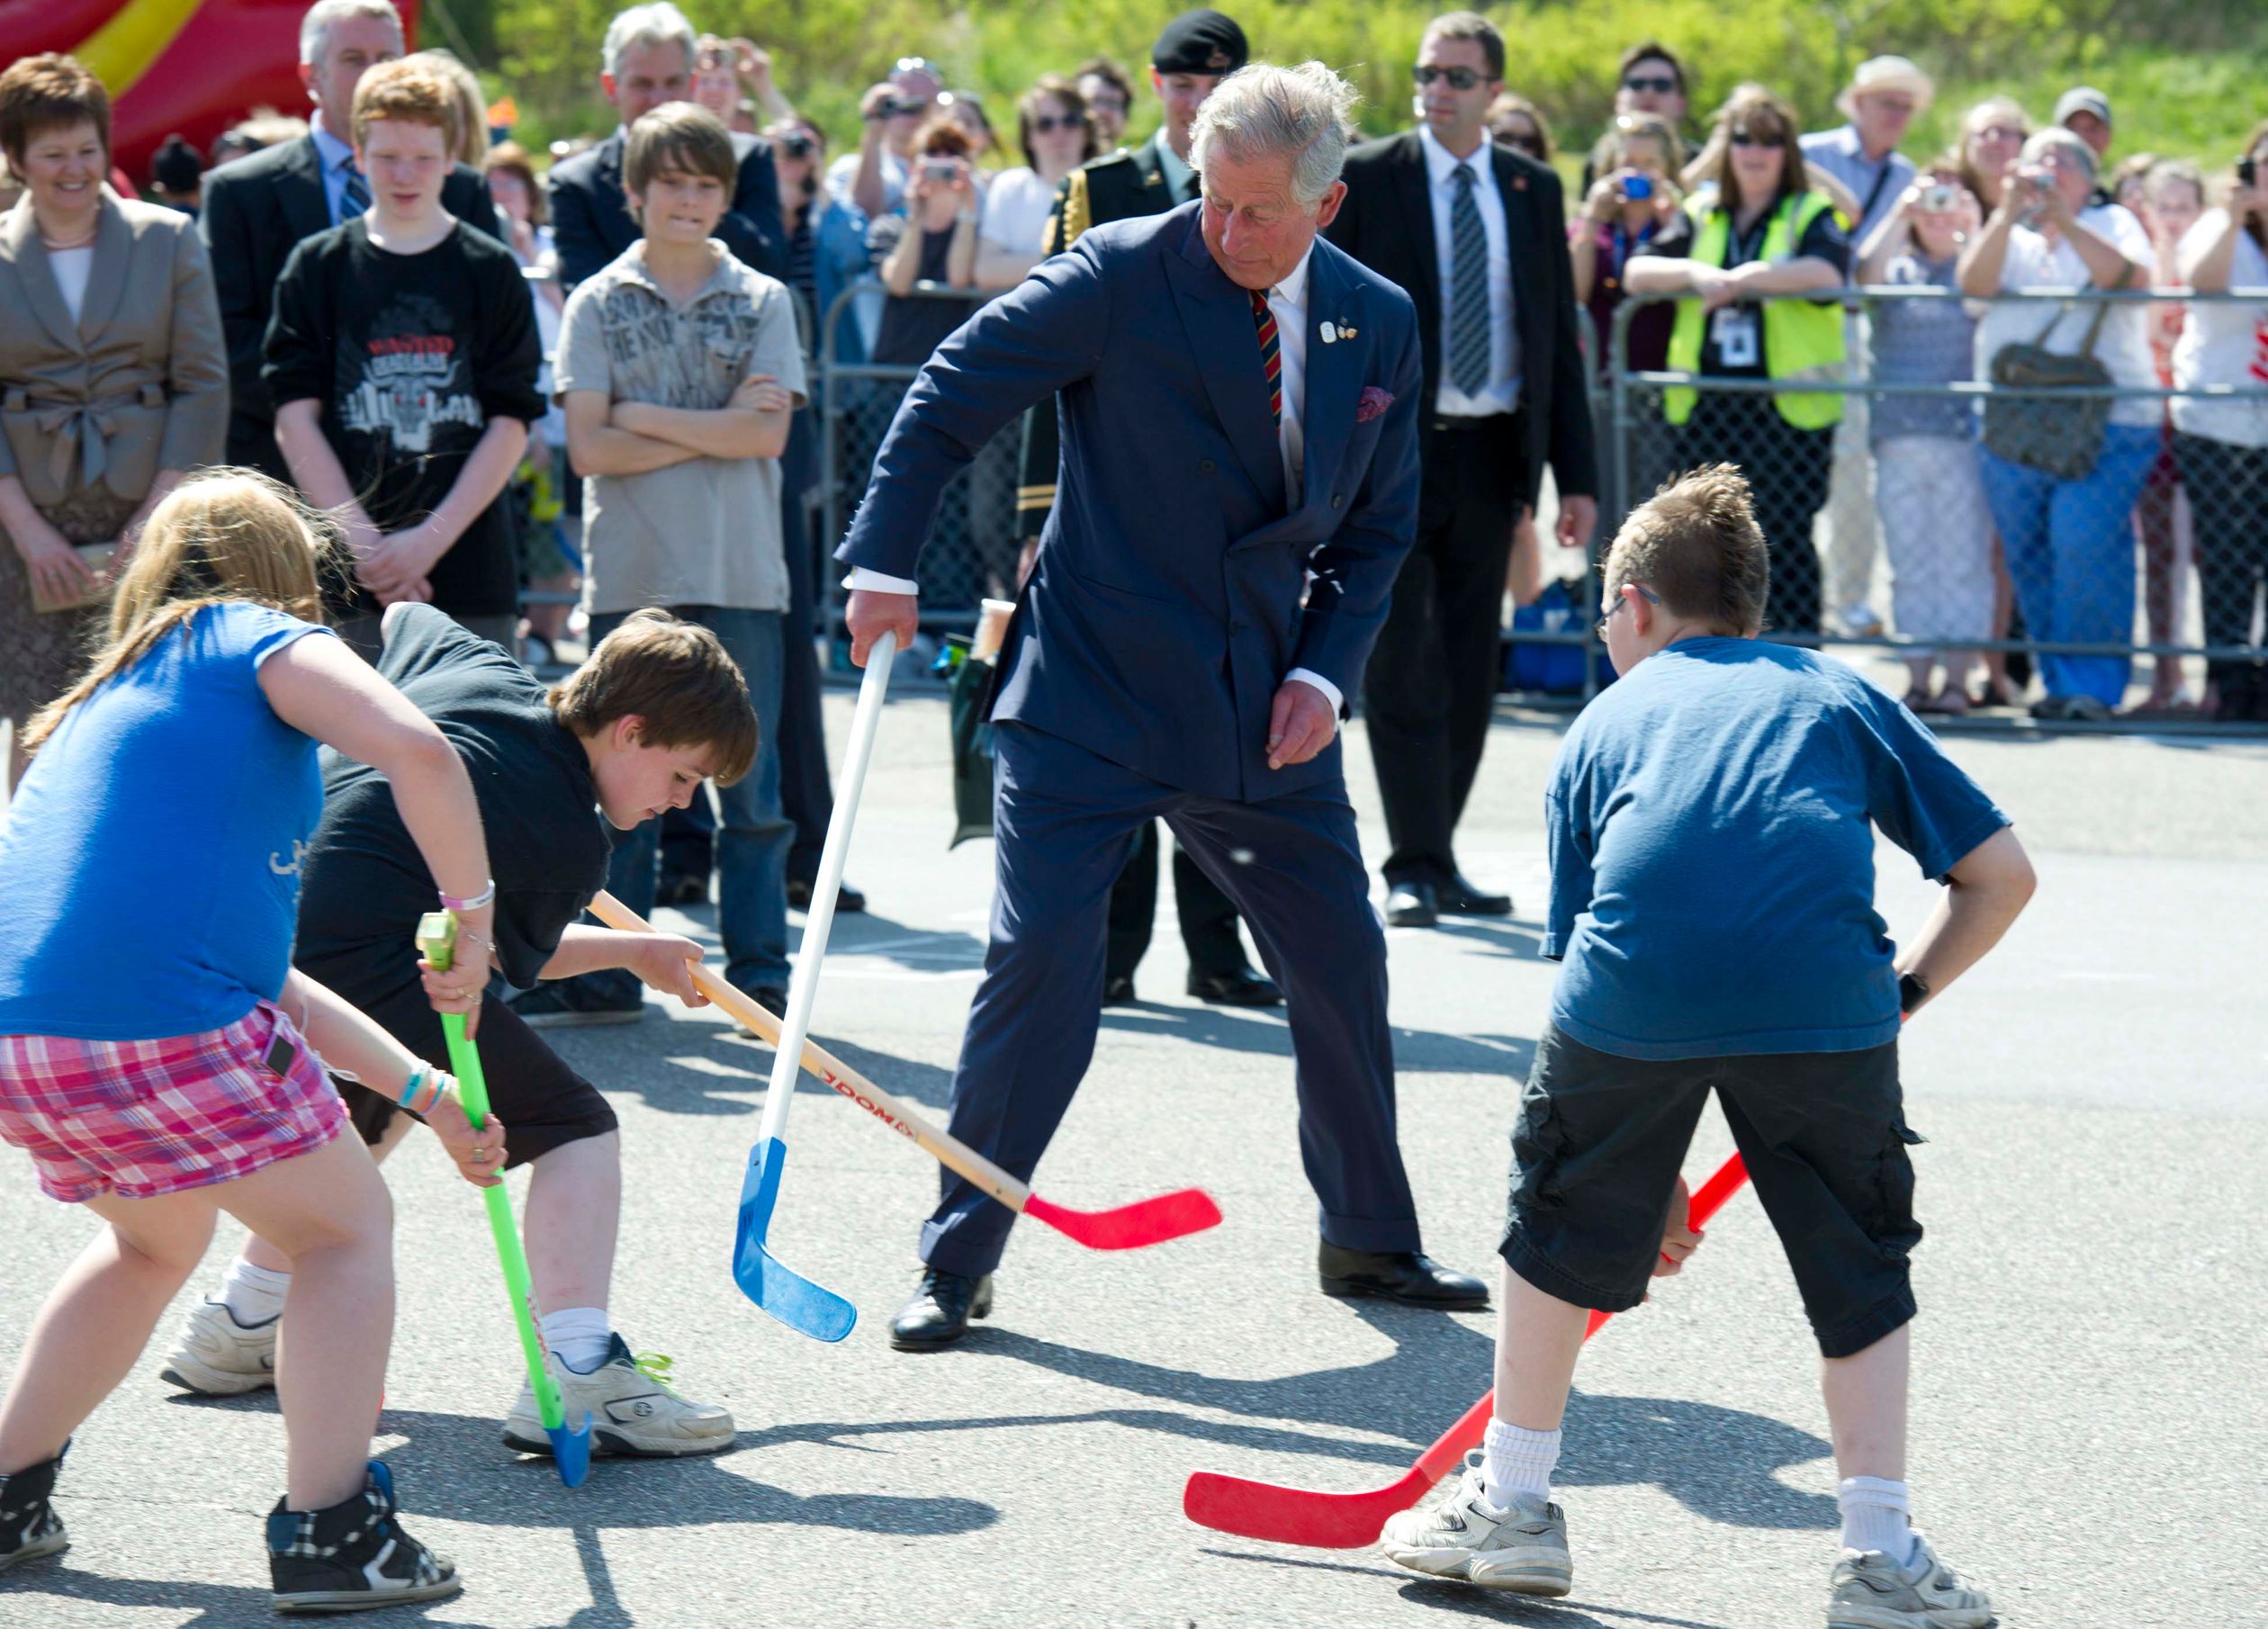 2012: Prins Charles speelt hockey tijdens een bezoek aan Canada.